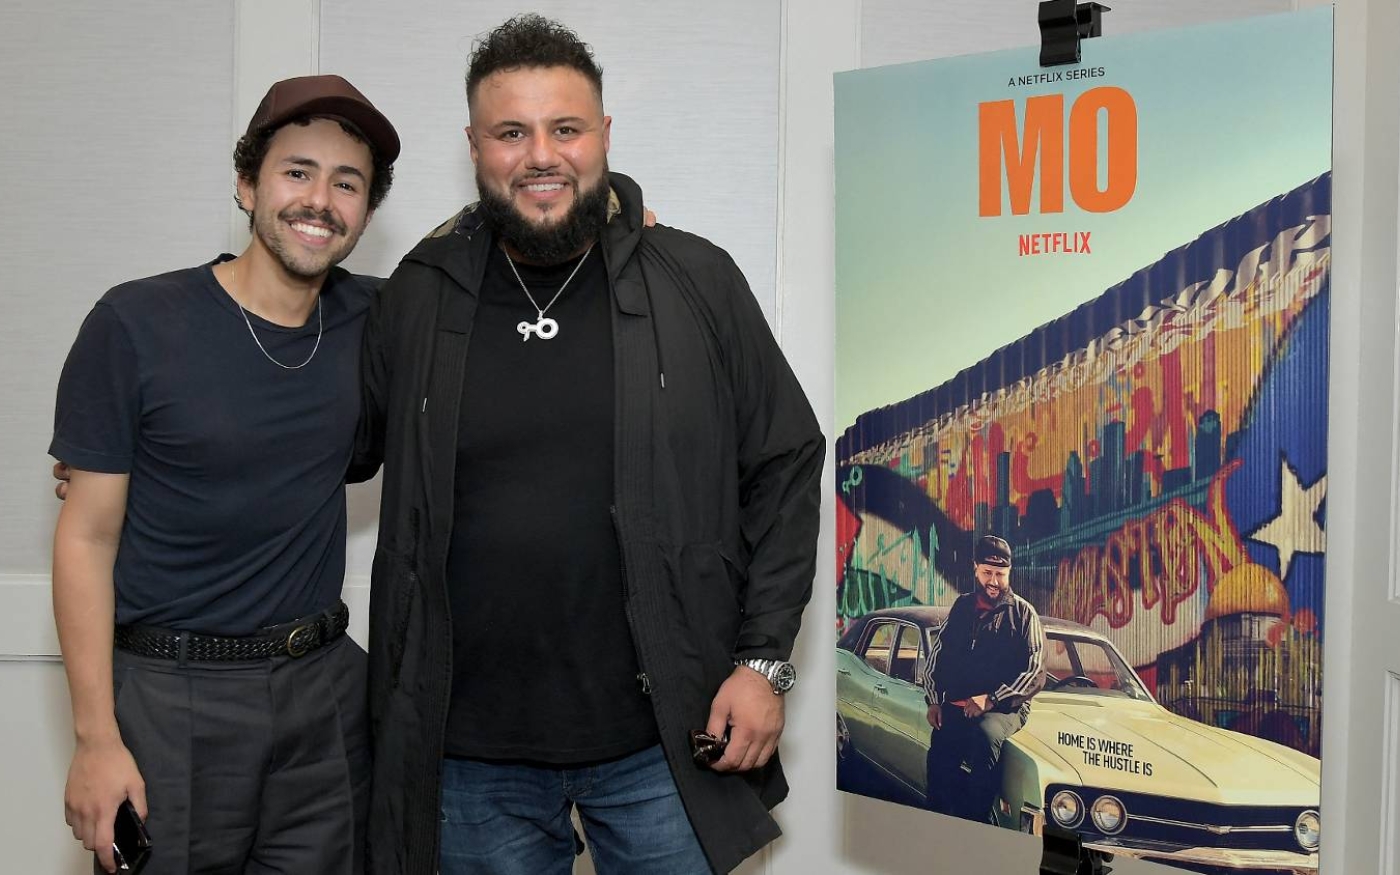 Ramy Youssef (à gauche) et Mohammed Amer (à droite) combinent avec succès leurs styles d’humour dans la série Mo de Netflix (Charley Gallay/GETTY IMAGES/AFP)